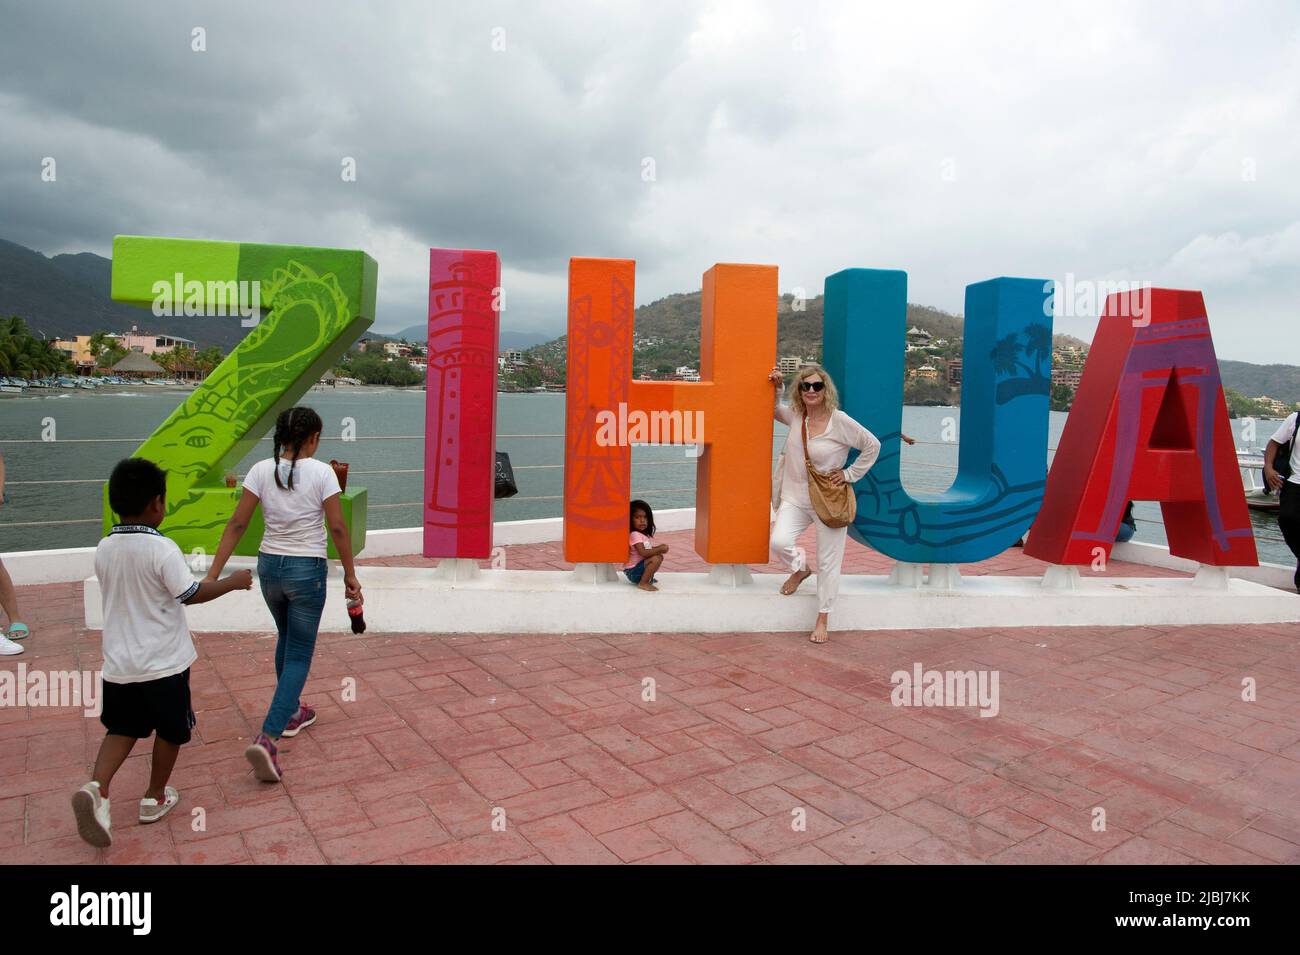 Firme con letras coloridas que deletrean a Zihuatanejo, México Foto de stock